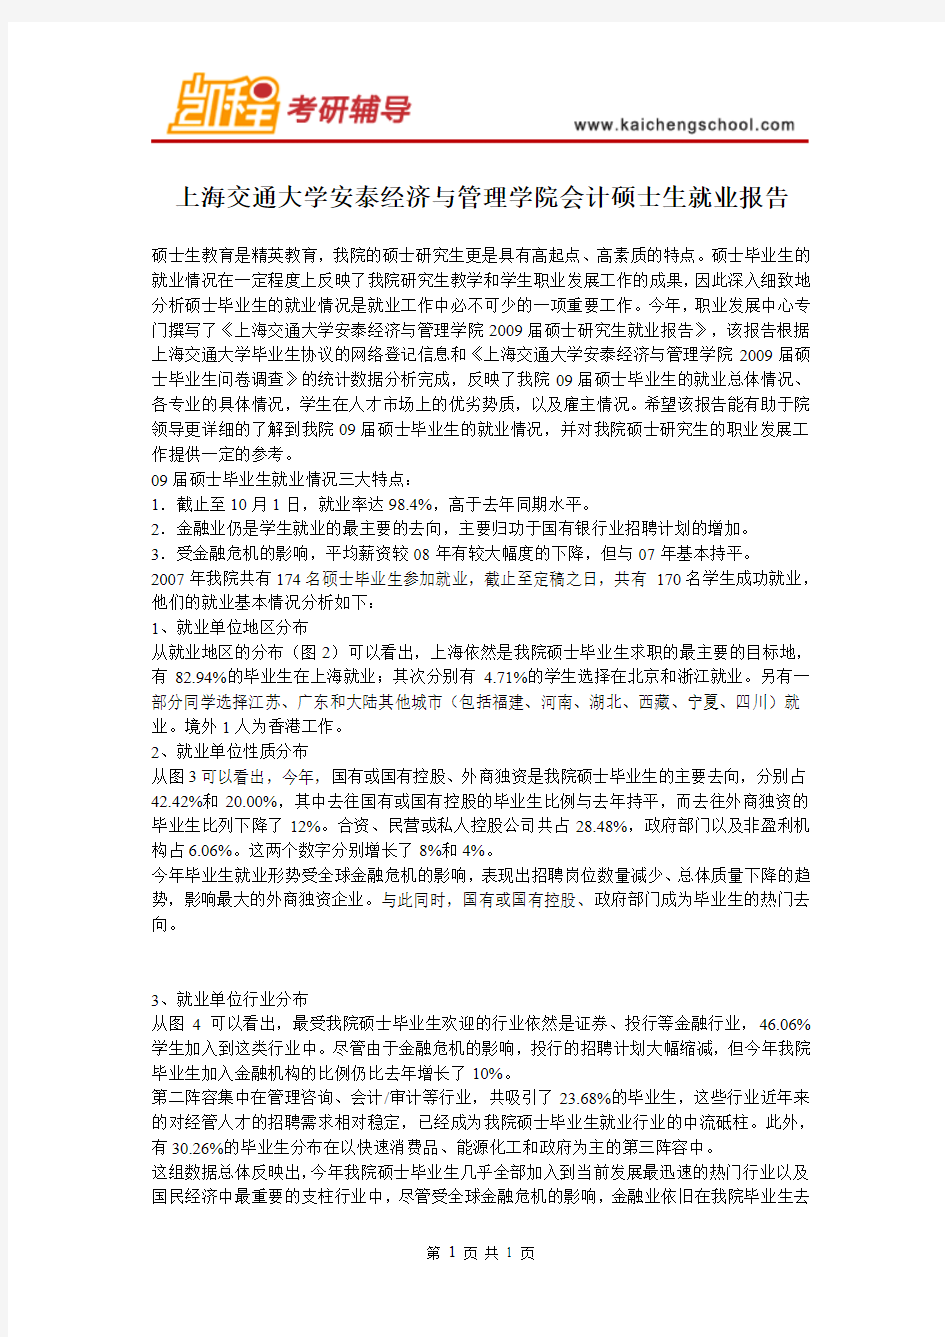 上海交通大学安泰经济与管理学院会计硕士生就业报告